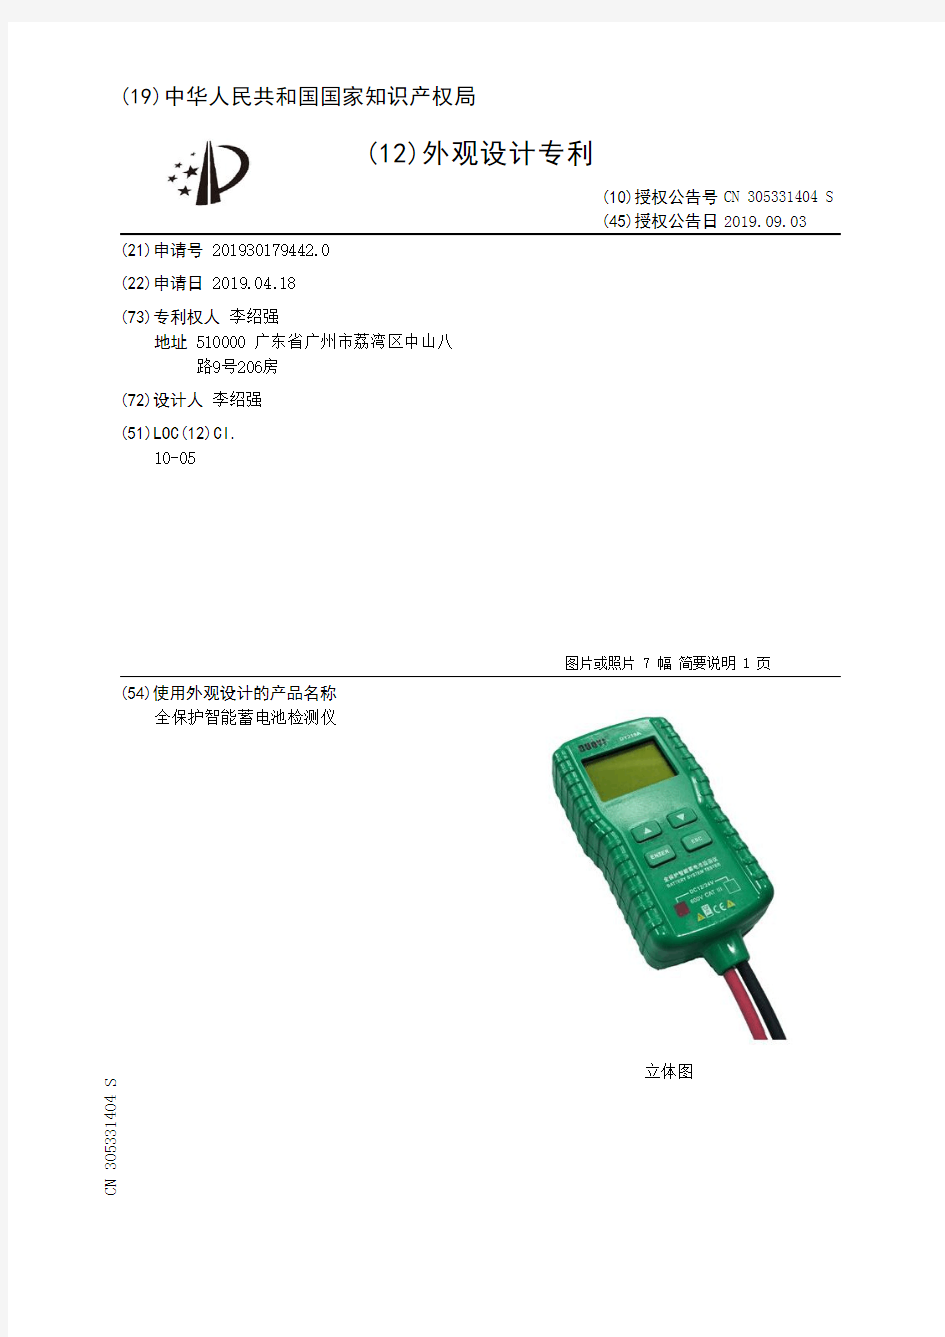 【CN305331404S】全保护智能蓄电池检测仪【专利】